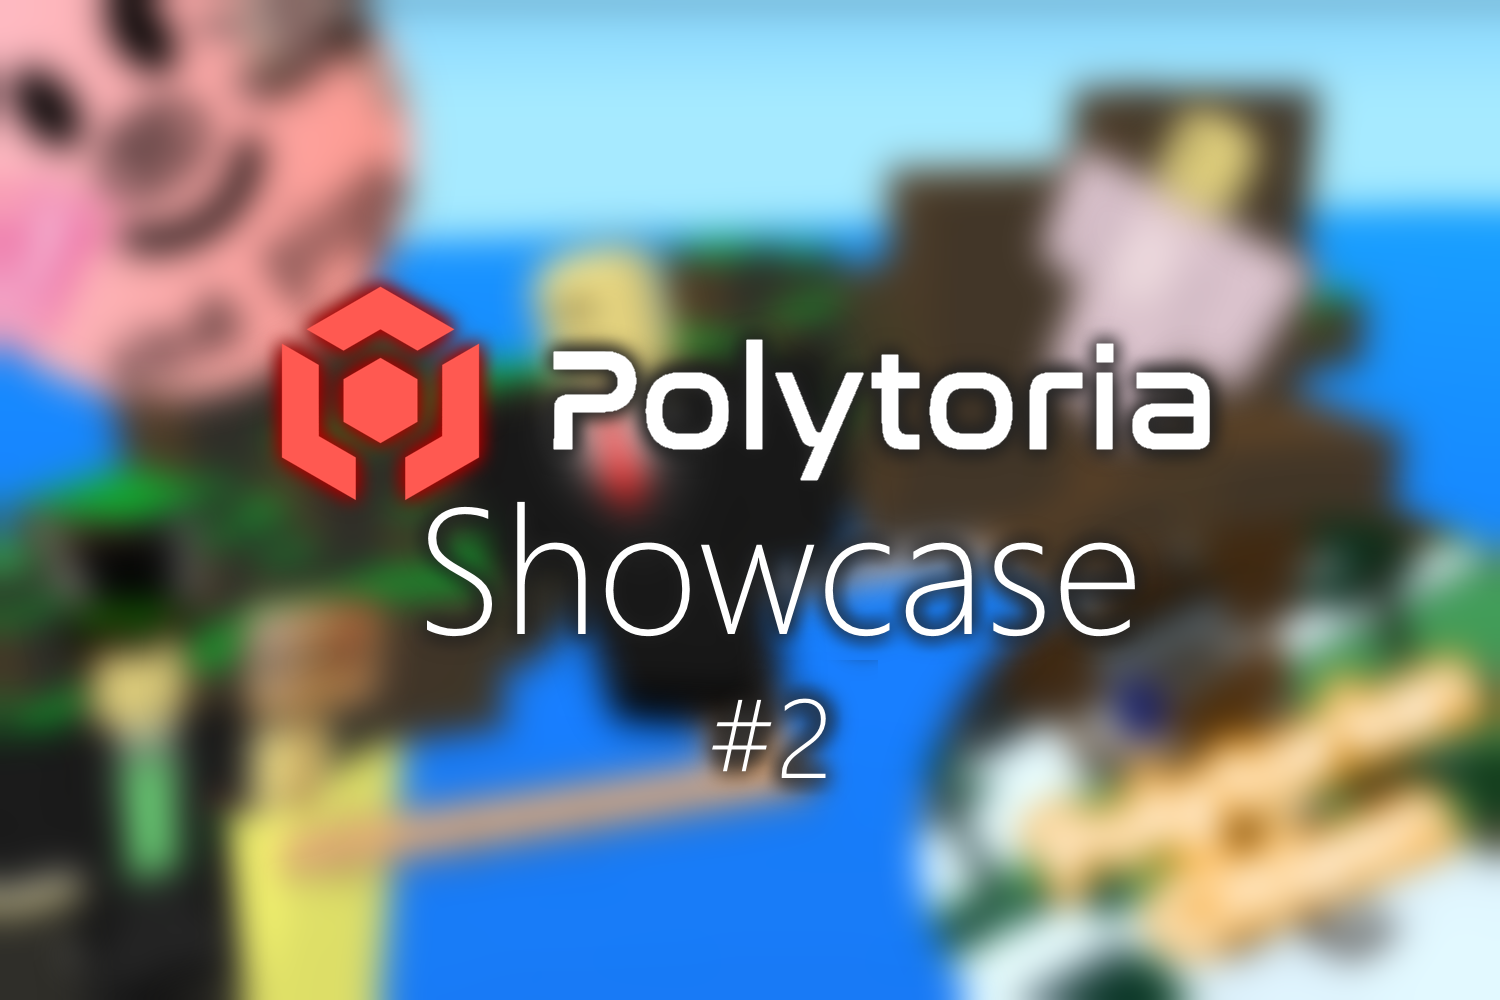 Polytoria Showcase #2